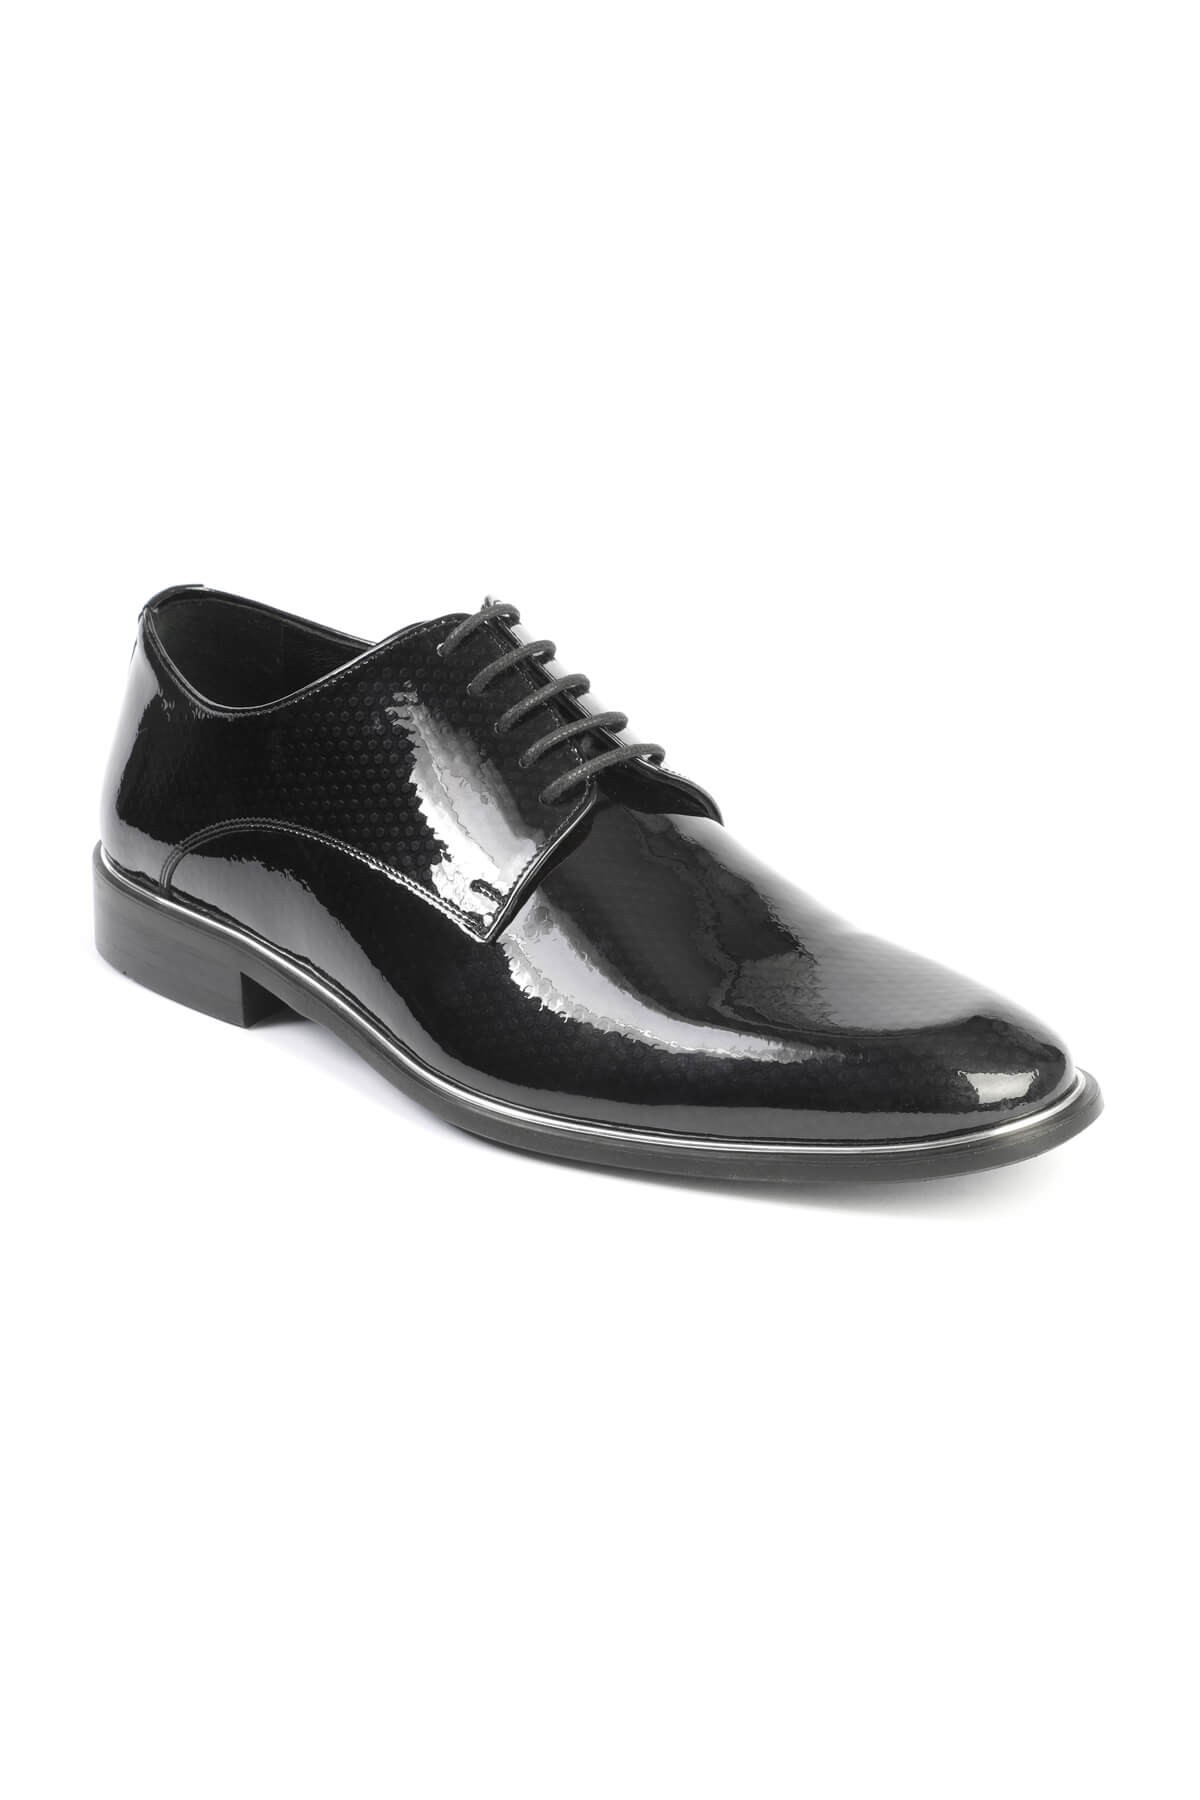 Libero 2140 Klasik Erkek Ayakkabı - 40